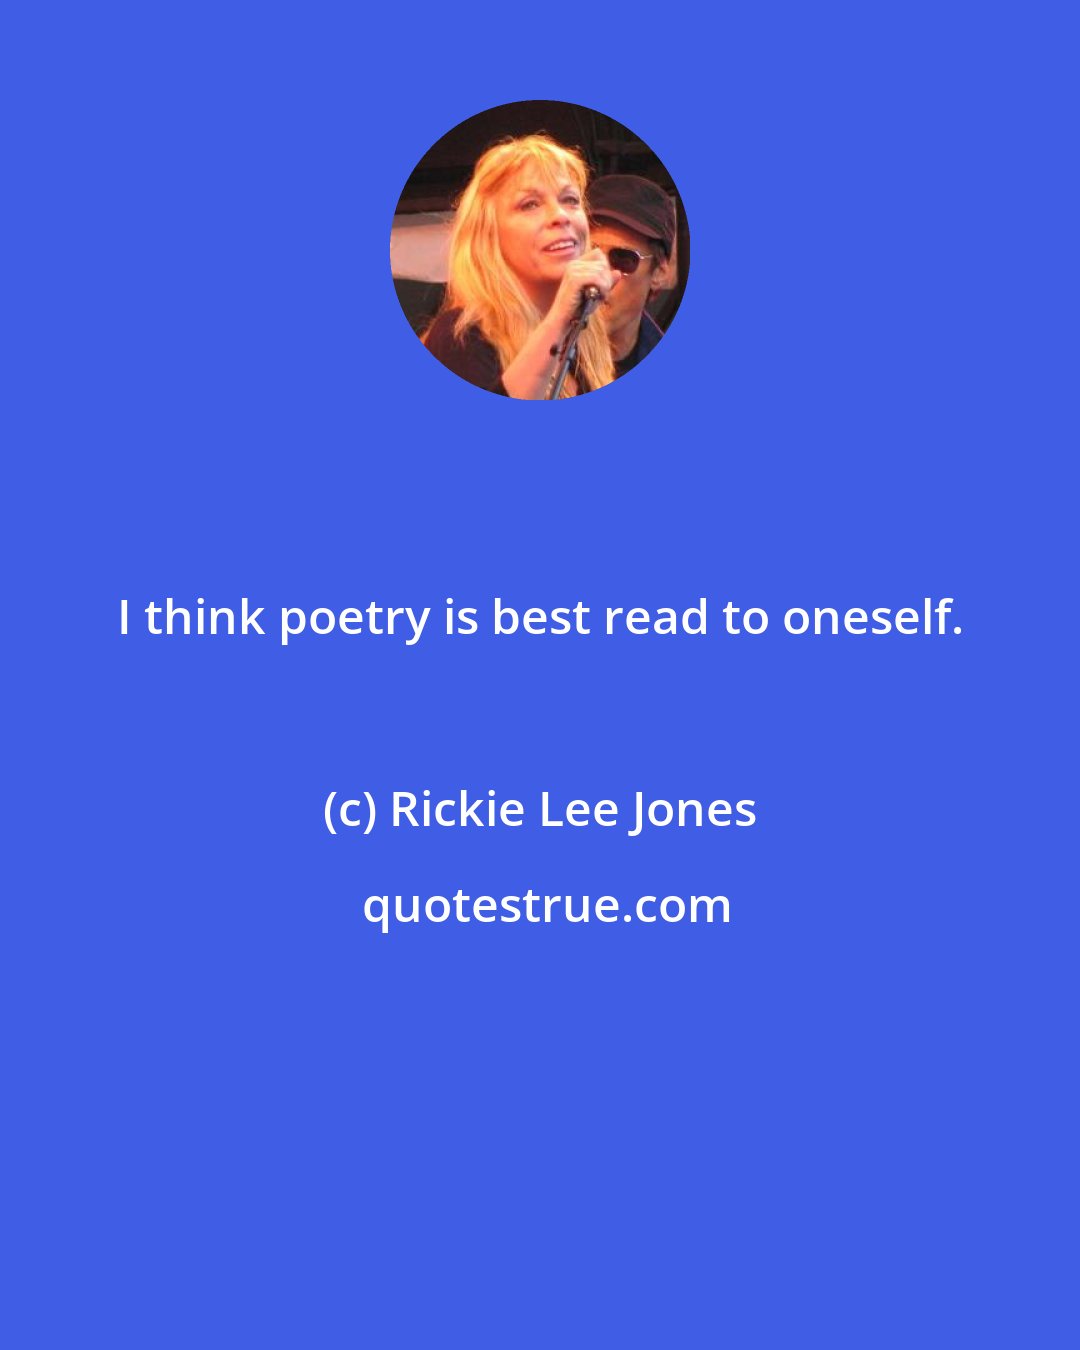 Rickie Lee Jones: I think poetry is best read to oneself.